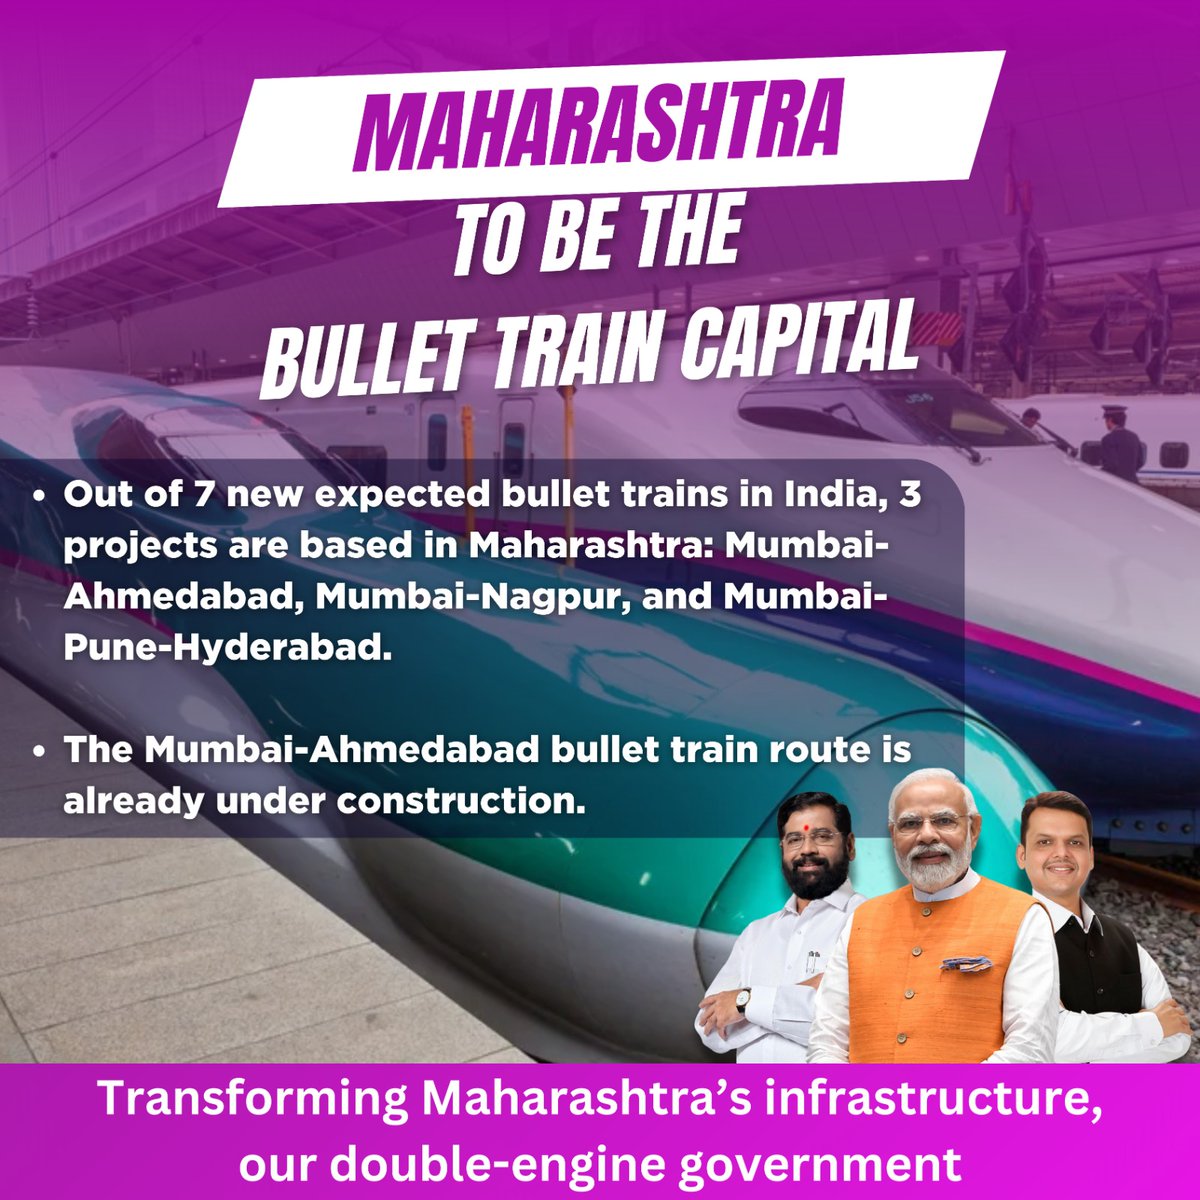 महाराष्ट्र हाई-स्पीड रेल परियोजनाओं में अग्रणी है! प्रधानमंत्री मोदी और मुख्यमंत्री एकनाथ शिंदे का प्रशासन 3 नए बुलेट ट्रेन मार्गों के साथ महत्वपूर्ण प्रगति कर रहा है। यह राज्य की कनेक्टिविटी और अर्थव्यवस्था के लिए एक गेम-चेंजर है।